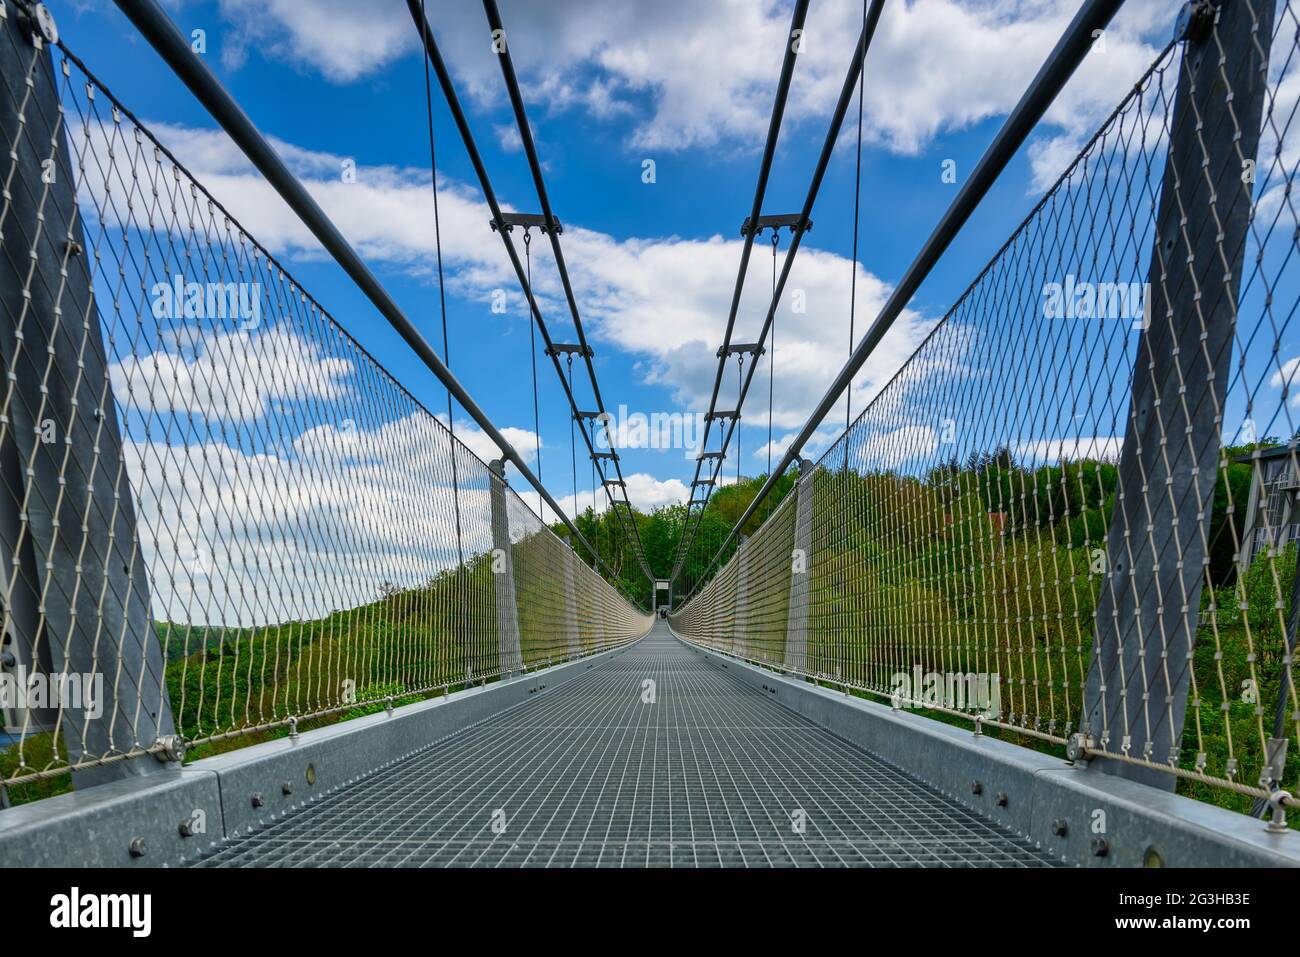 Le pont suspendu pour piétons Titan RT dans les montagnes Harz Banque D'Images